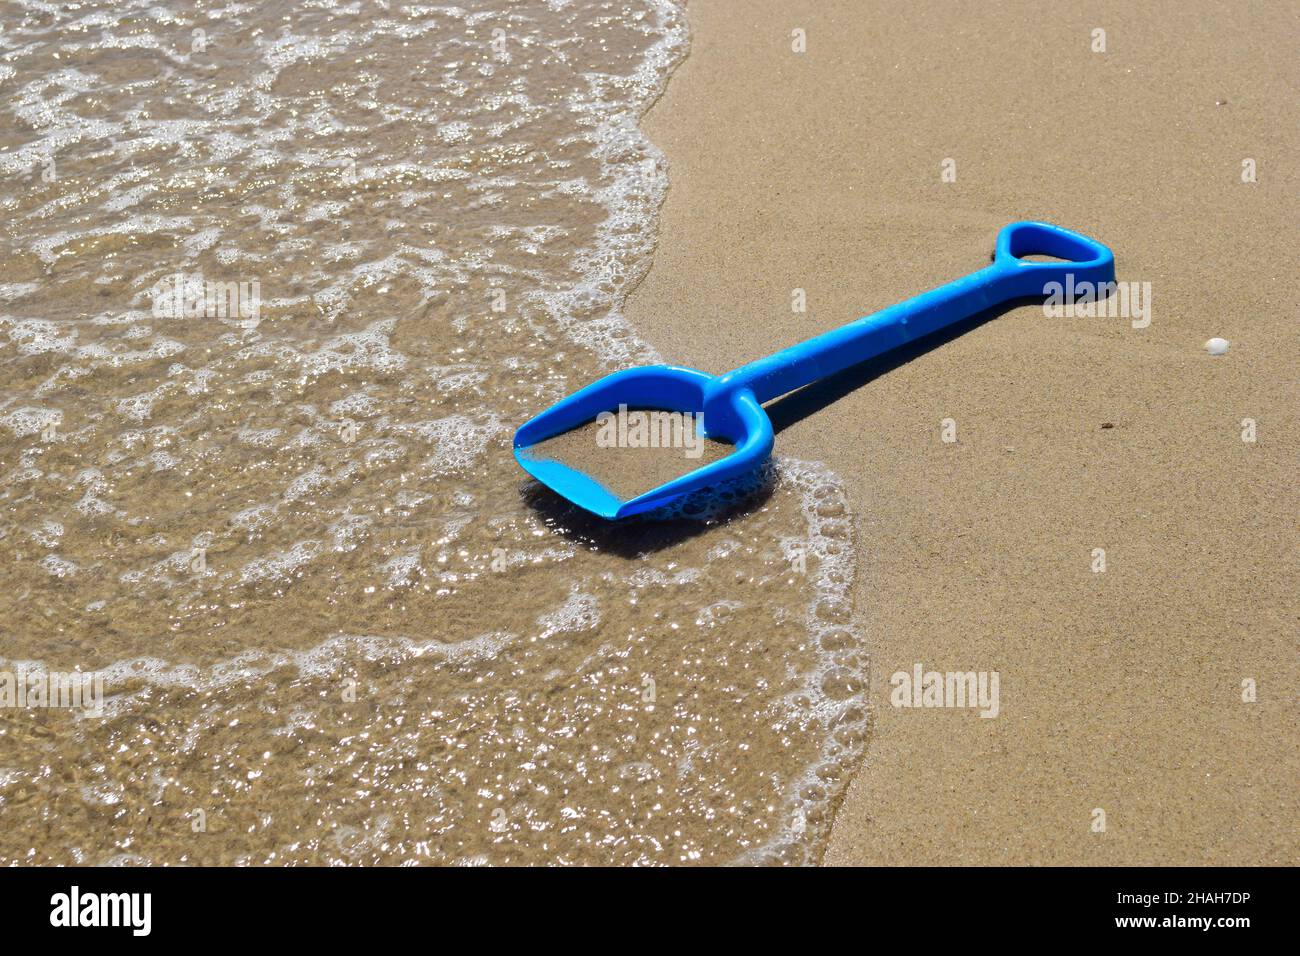 Am Sandstrand des Meeres liegt eine Kinderschaufel vor dem Hintergrund einer schäumenden Welle. Nahaufnahme Stockfoto